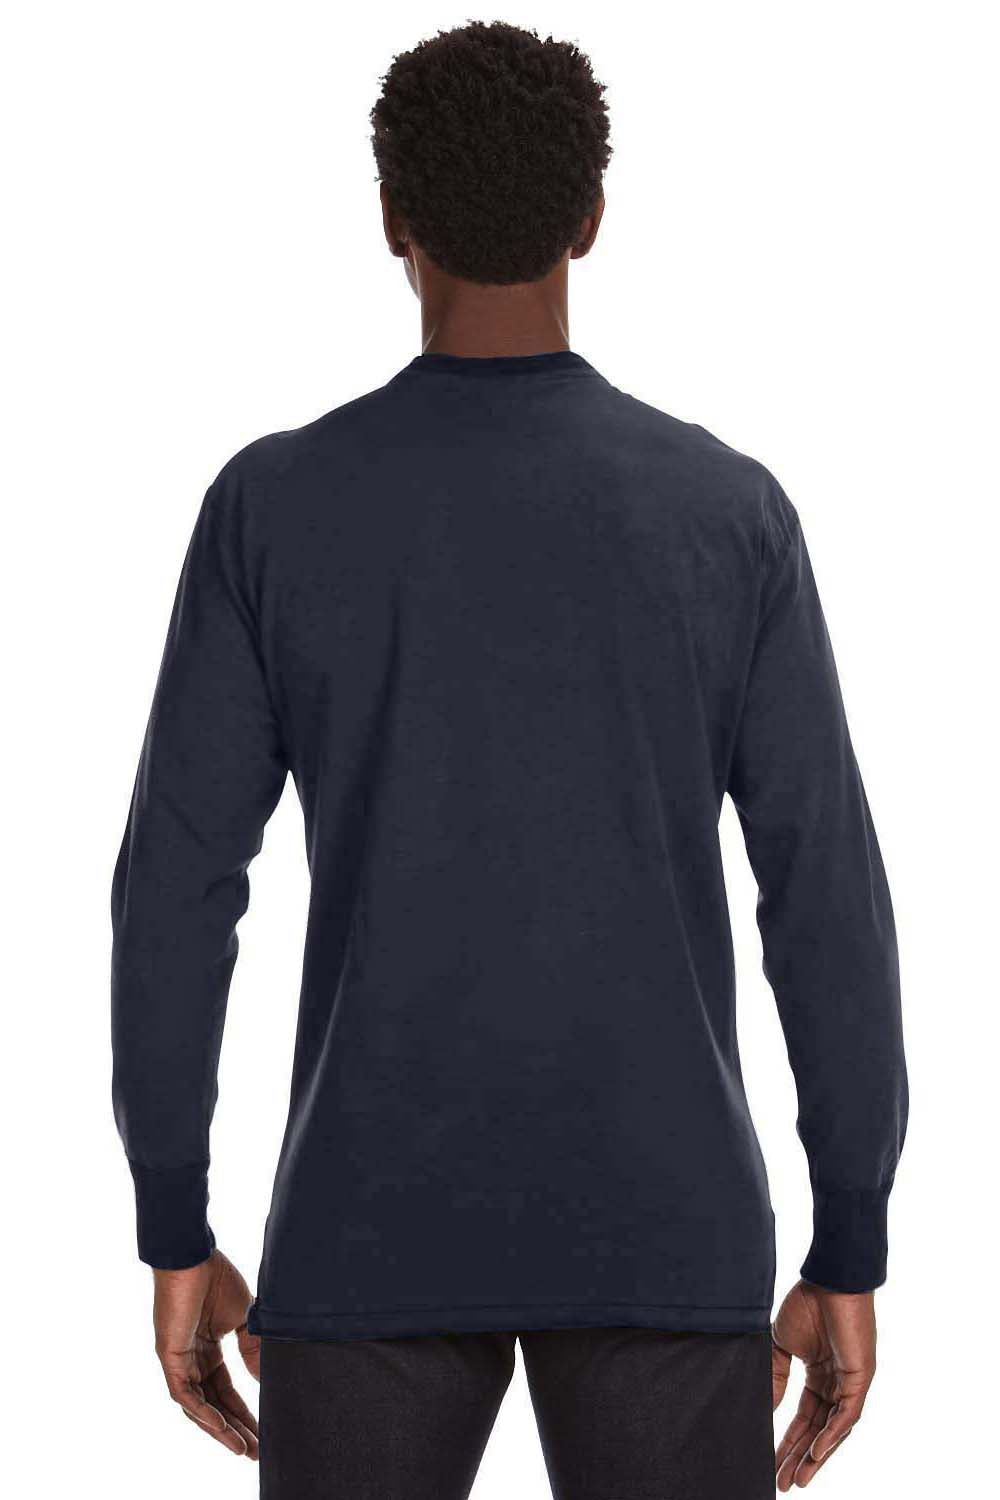 J America JA8244 Mens Vintage Brushed Jersey Long Sleeve Henley T-Shirt Navy Blue Back